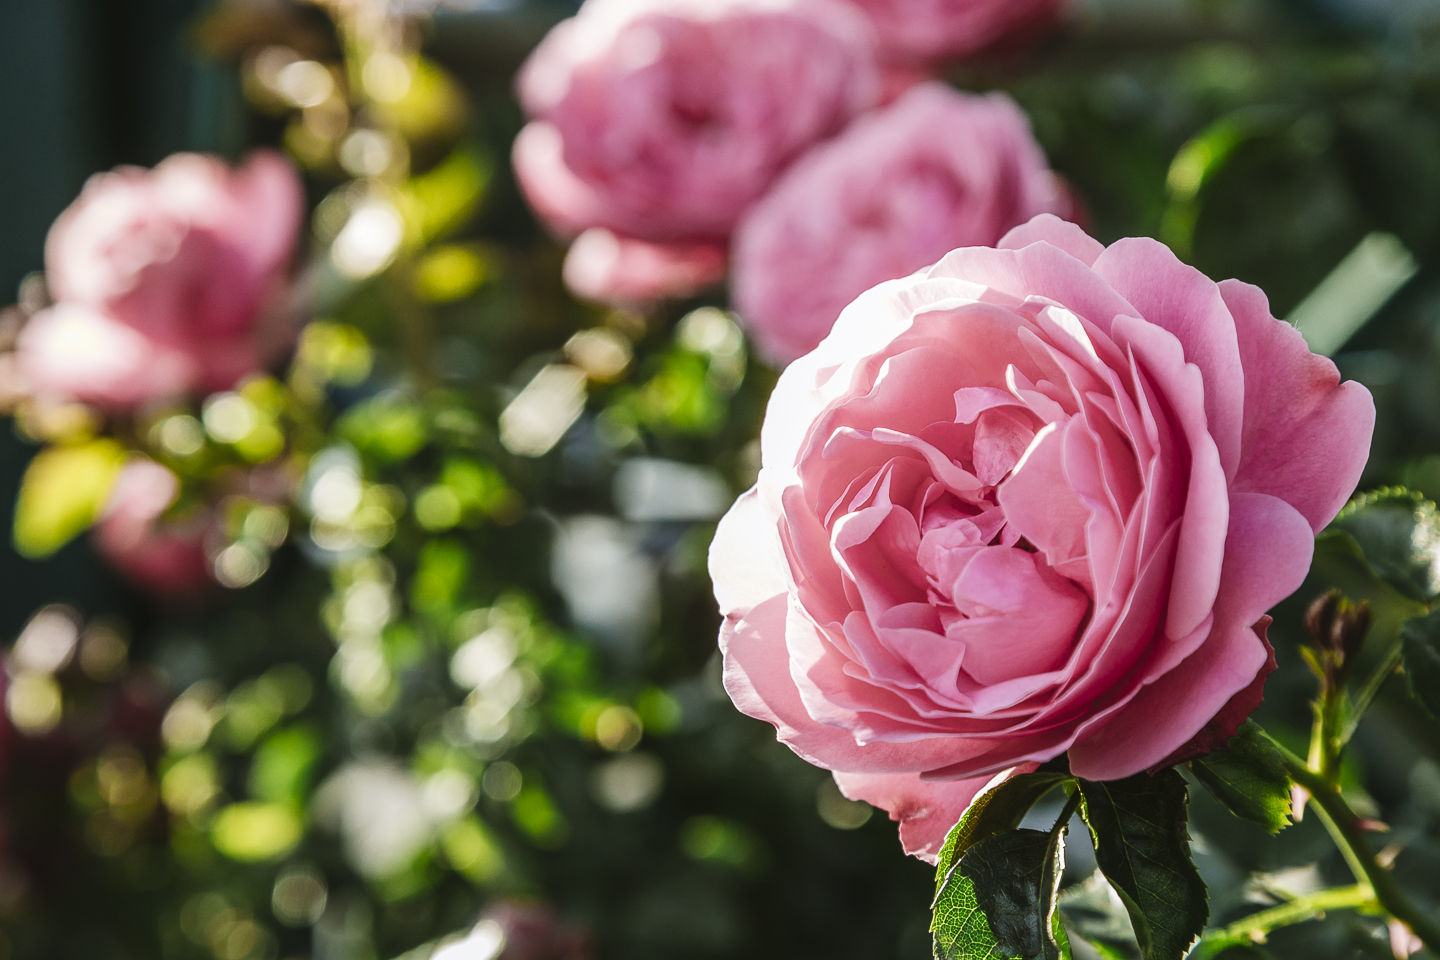 Detailaufnahme einer herrlichen rosa Rose im Hotel Pienzenau am Schlosspark